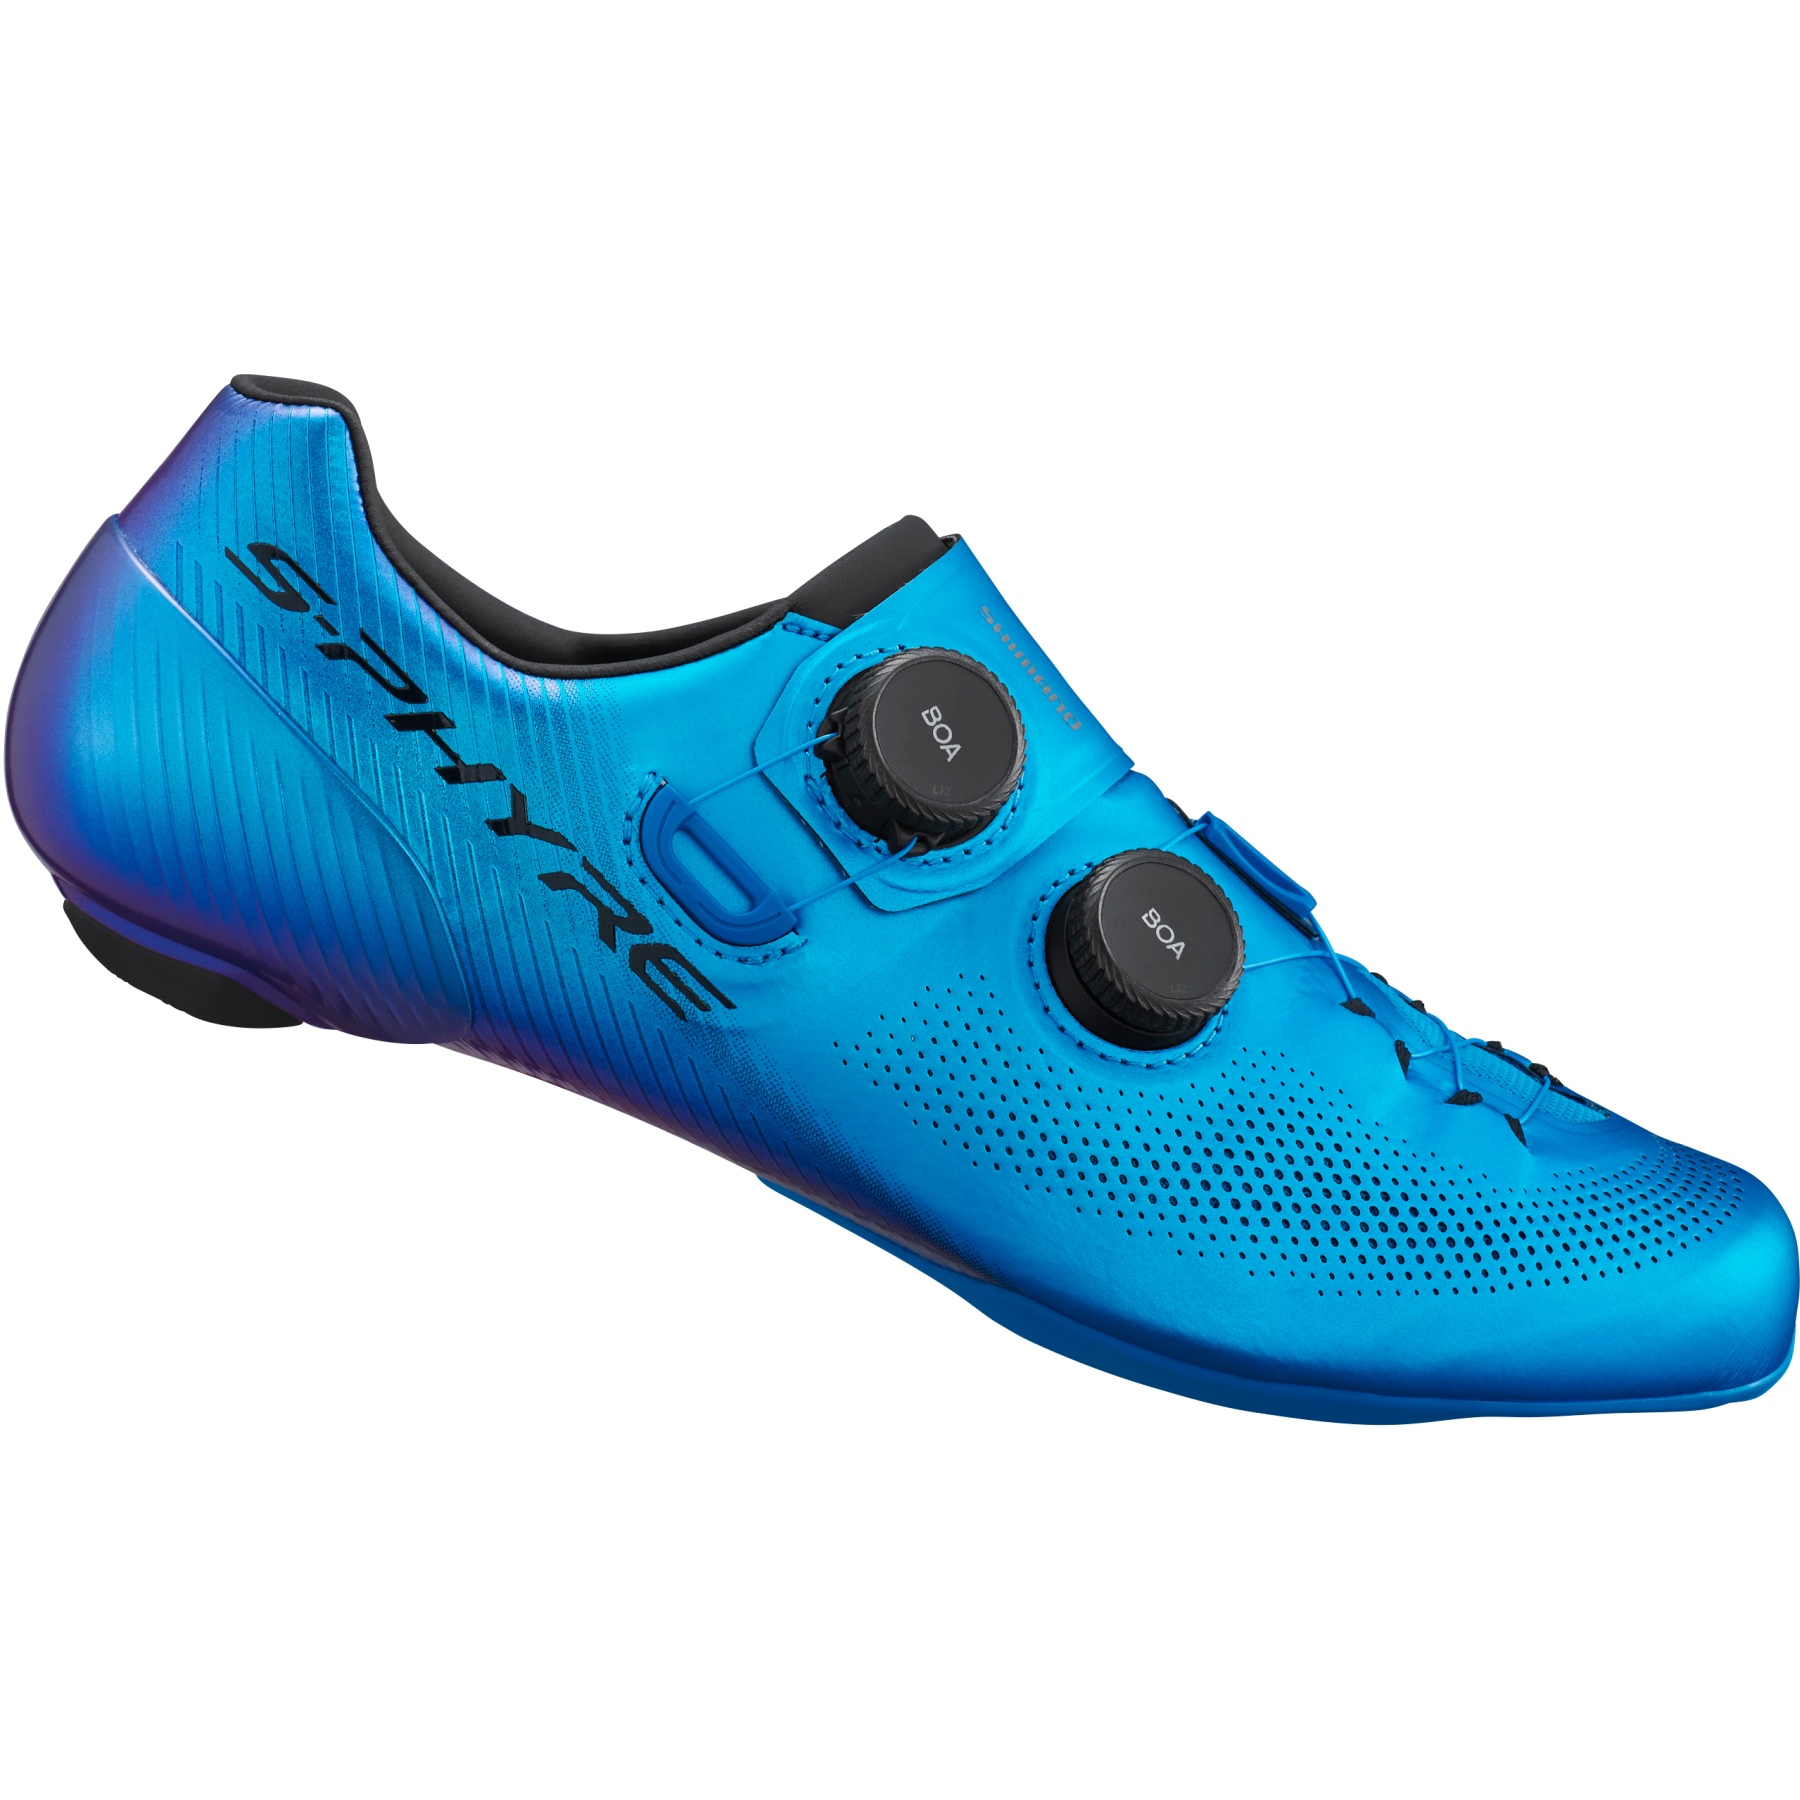 Produktbild von Shimano S-Phyre SH-RC903 Rennrad Schuhe - blau - B-Ware